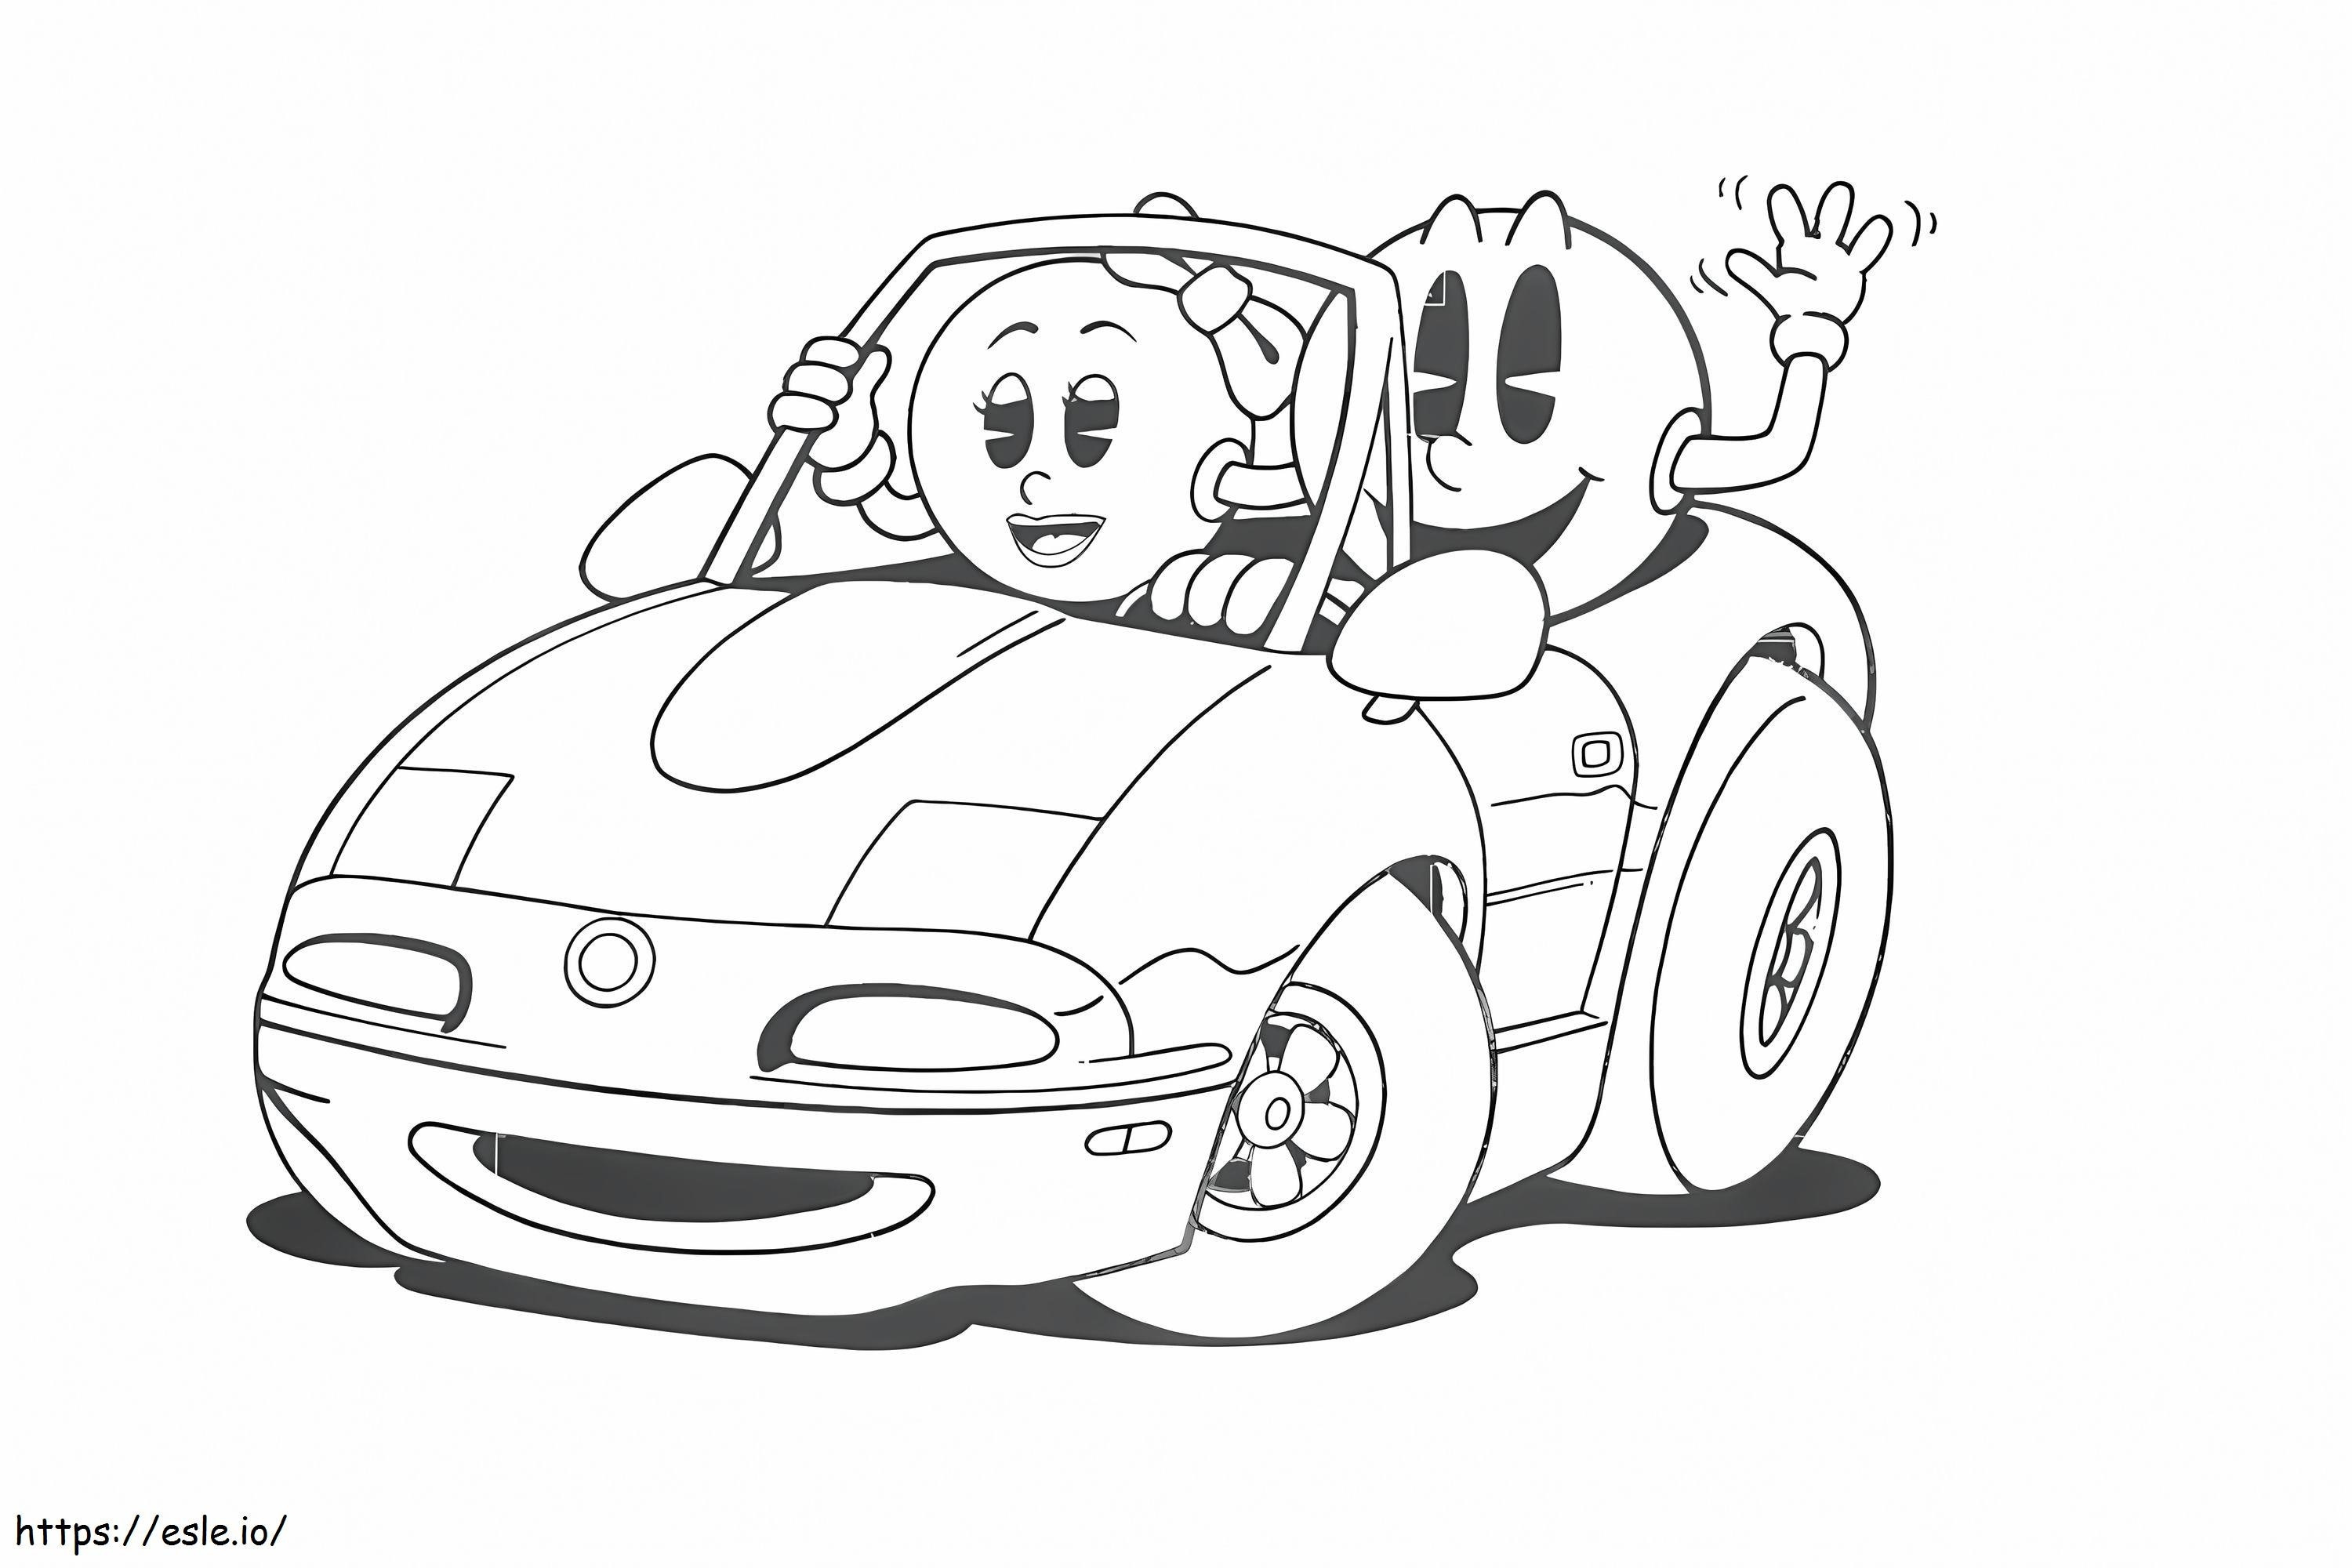 Pacman alla guida di un'auto con MS Pacman da colorare